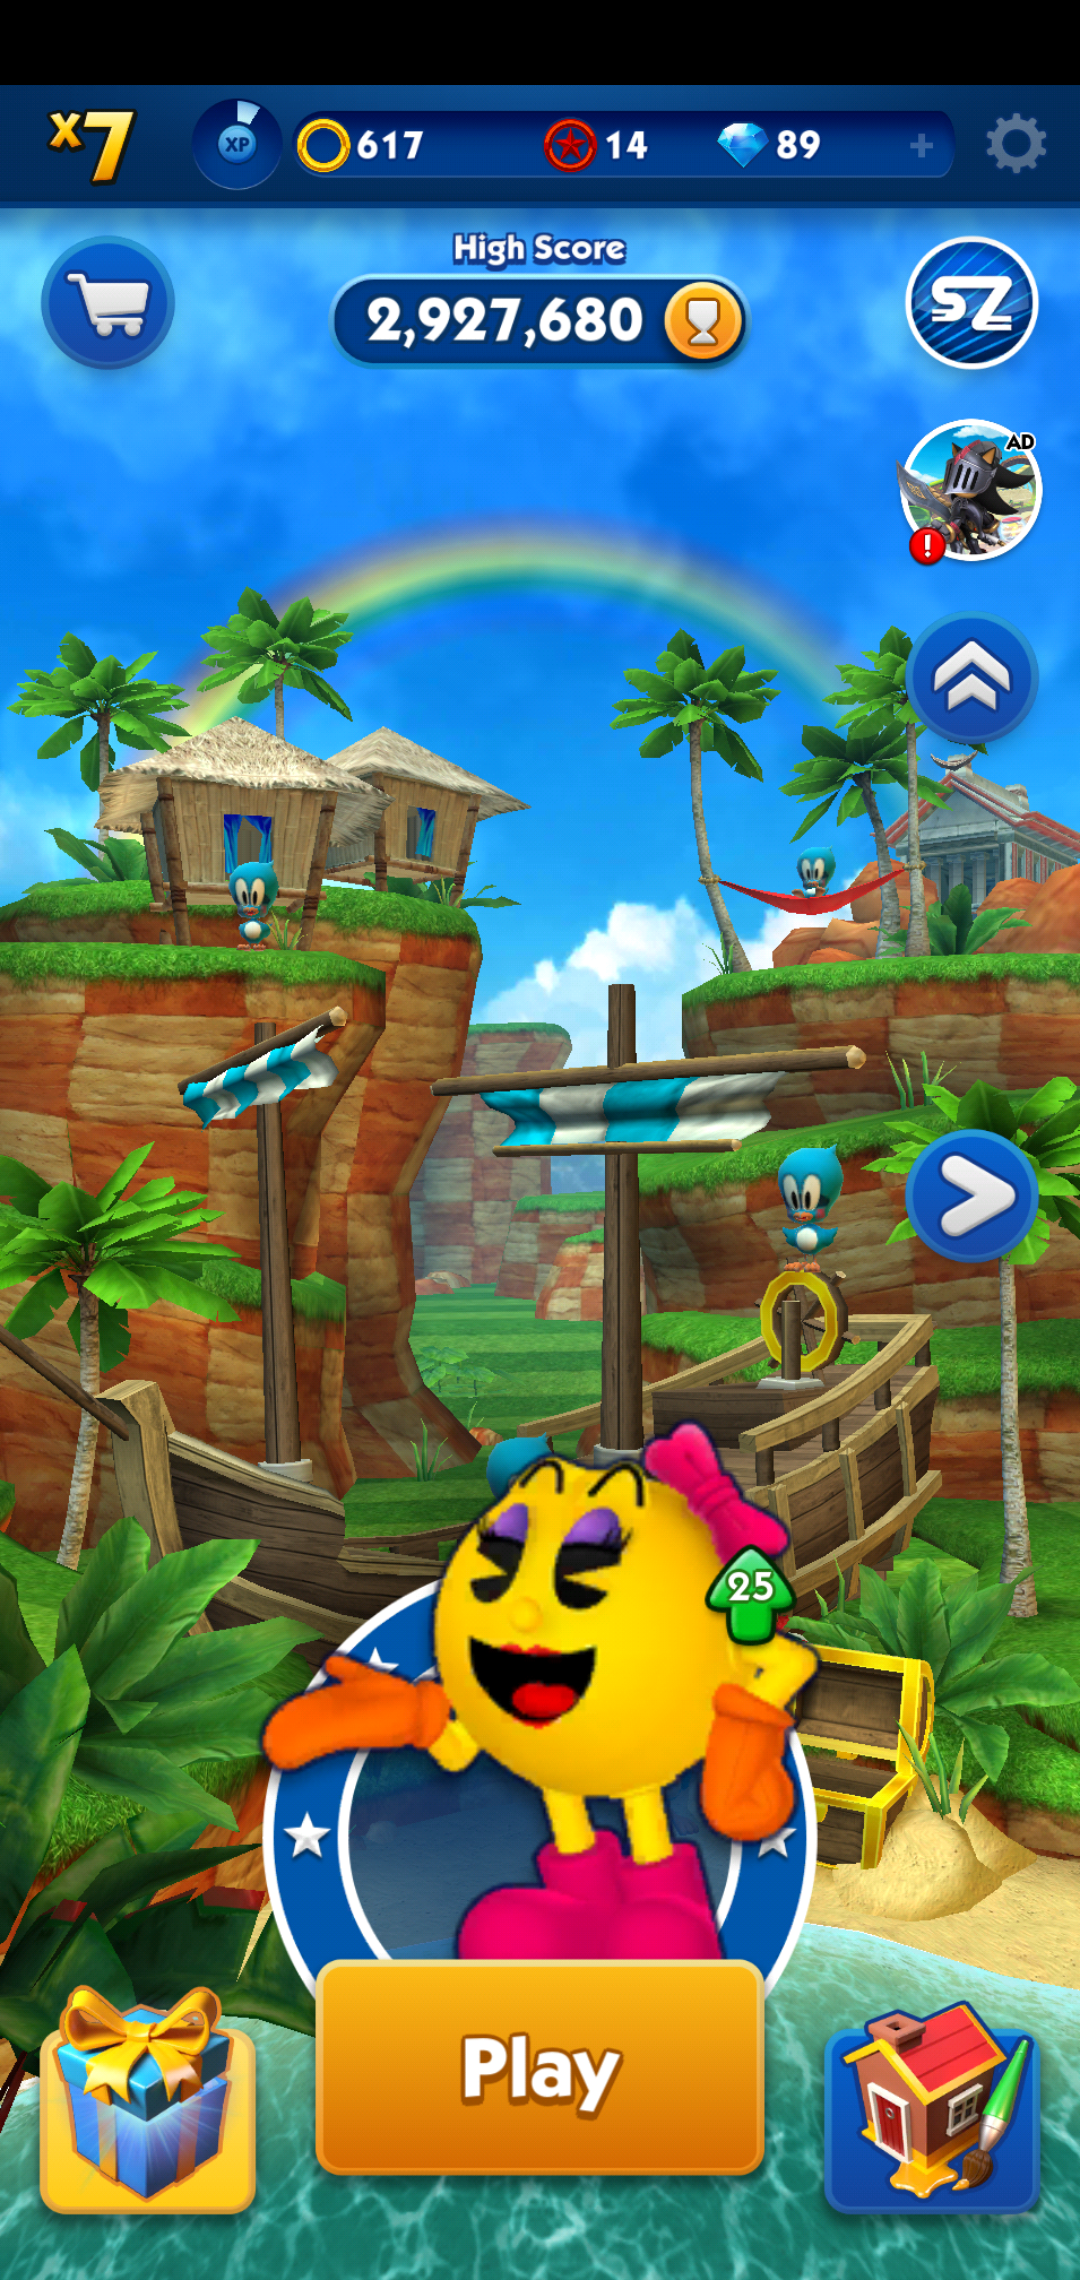 Novo jogo? Pac-Man recebe misteriosa ligação de Sonic no Twitter!